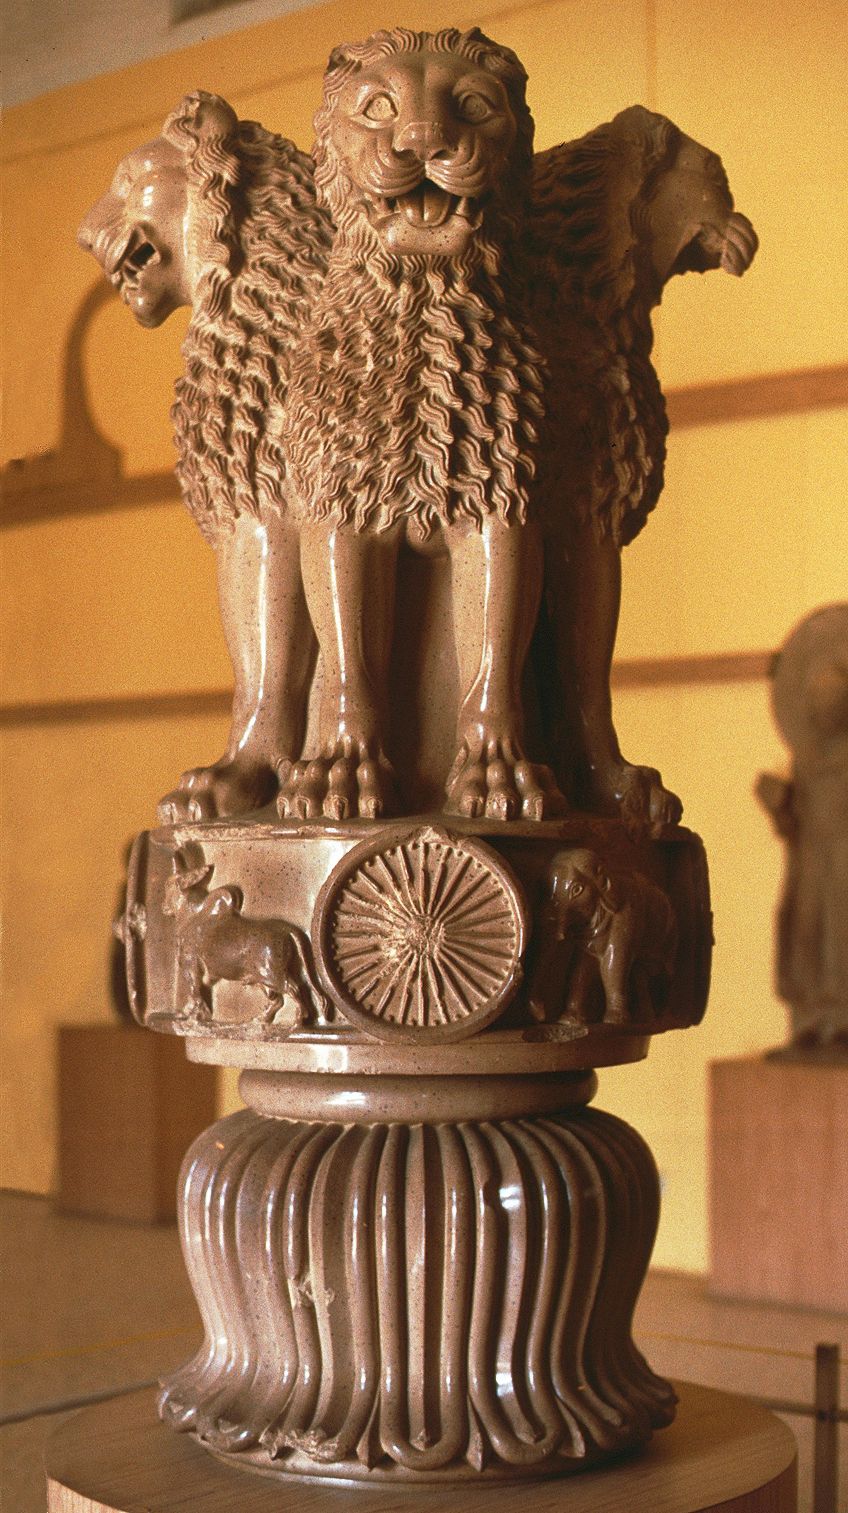 Arte indio – Descubre la historia y la influencia del arte indio antiguo